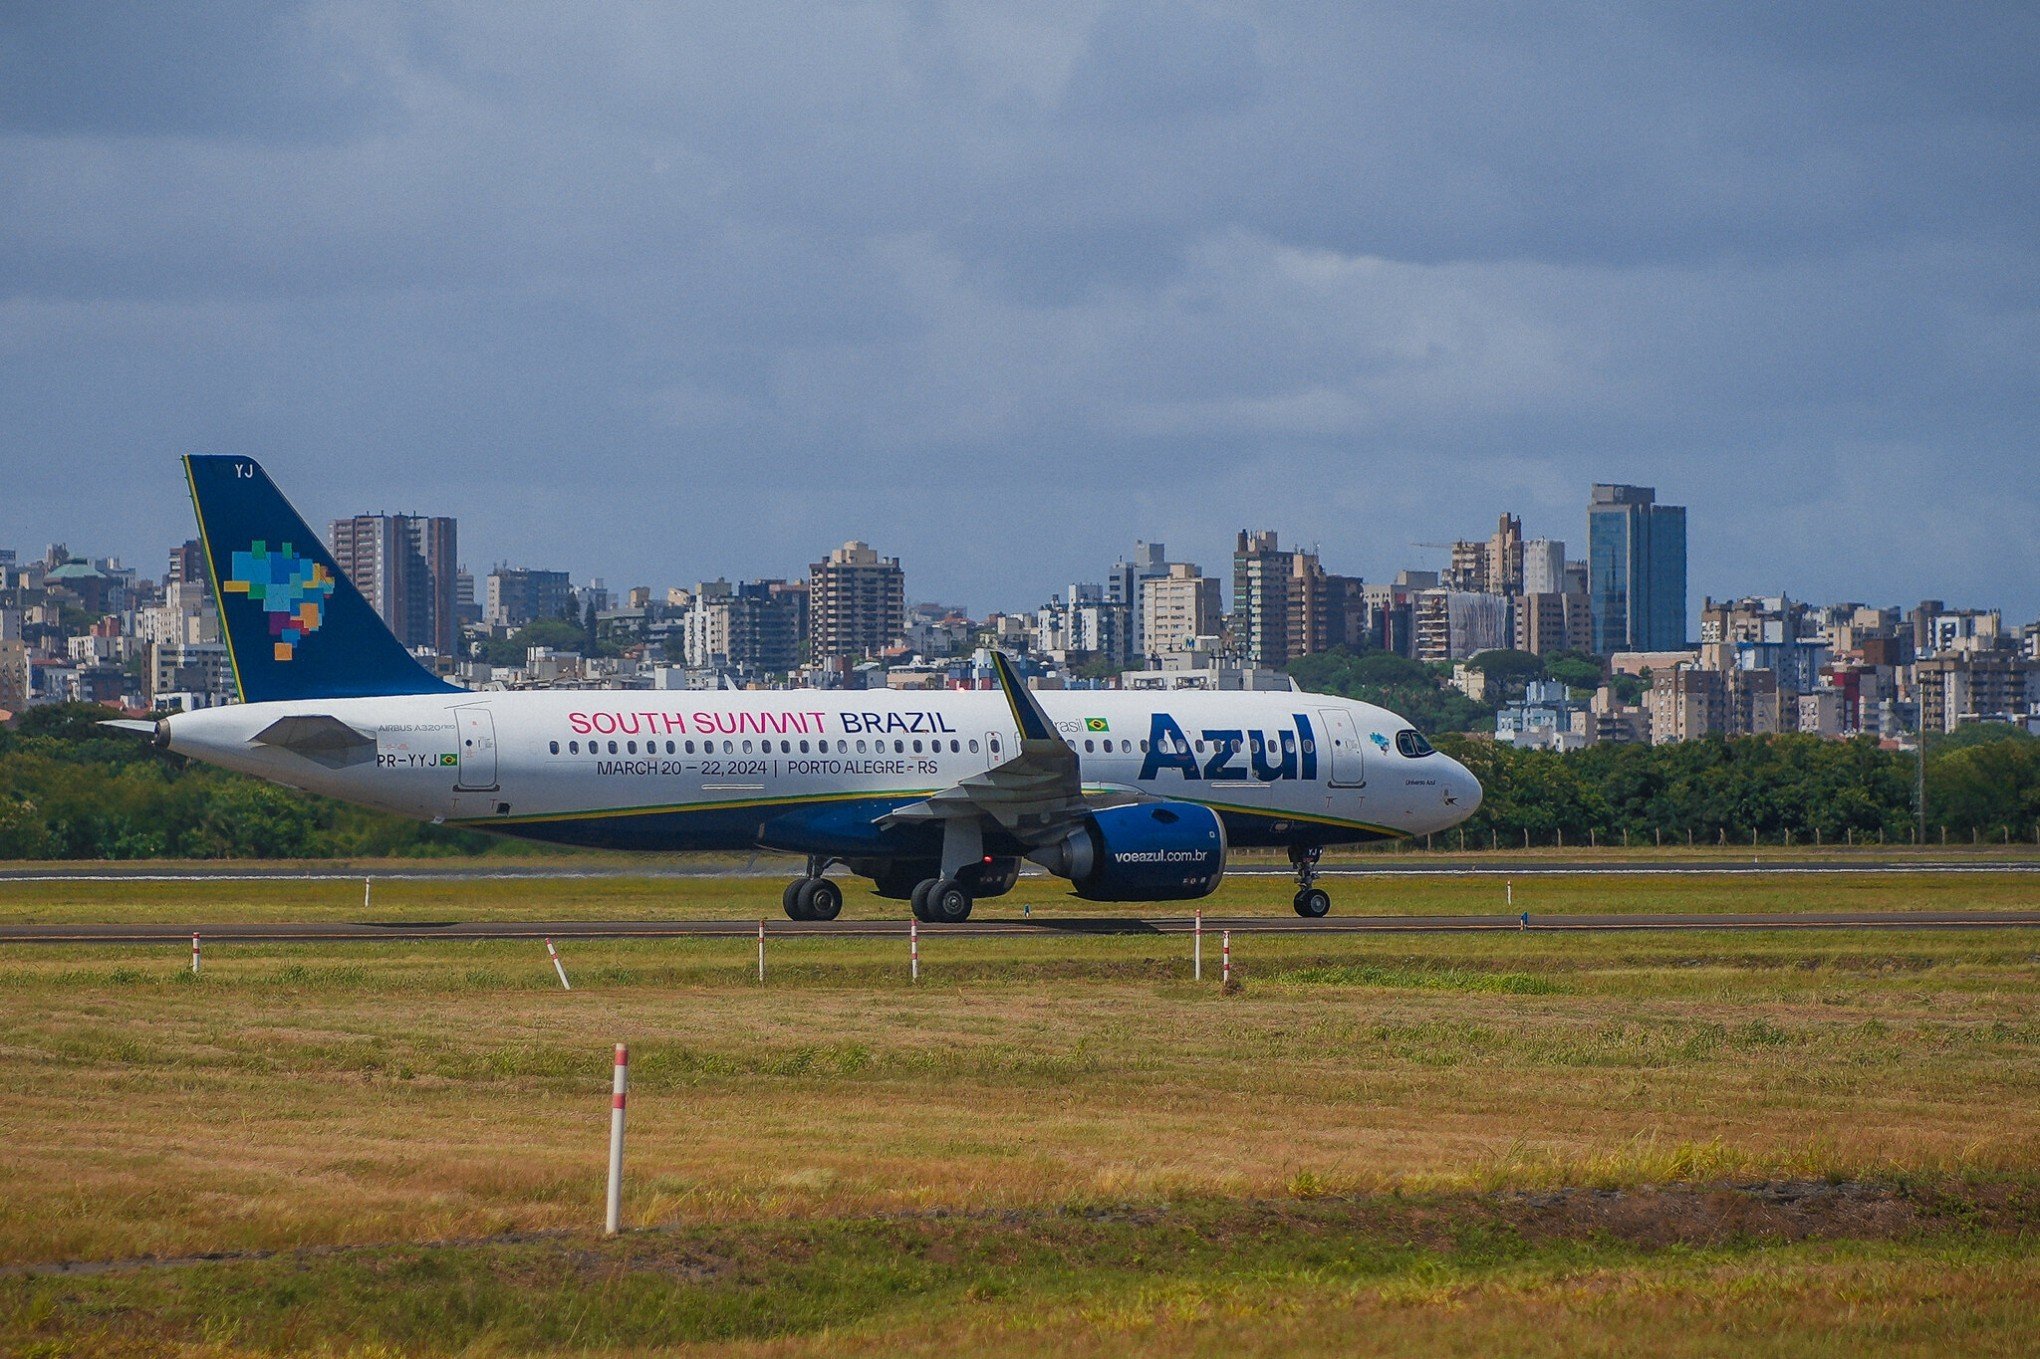 SOUTH SUMMIT BRAZIL: Avião da Azul ganha envelopamento especial sobre o evento de Porto Alegre